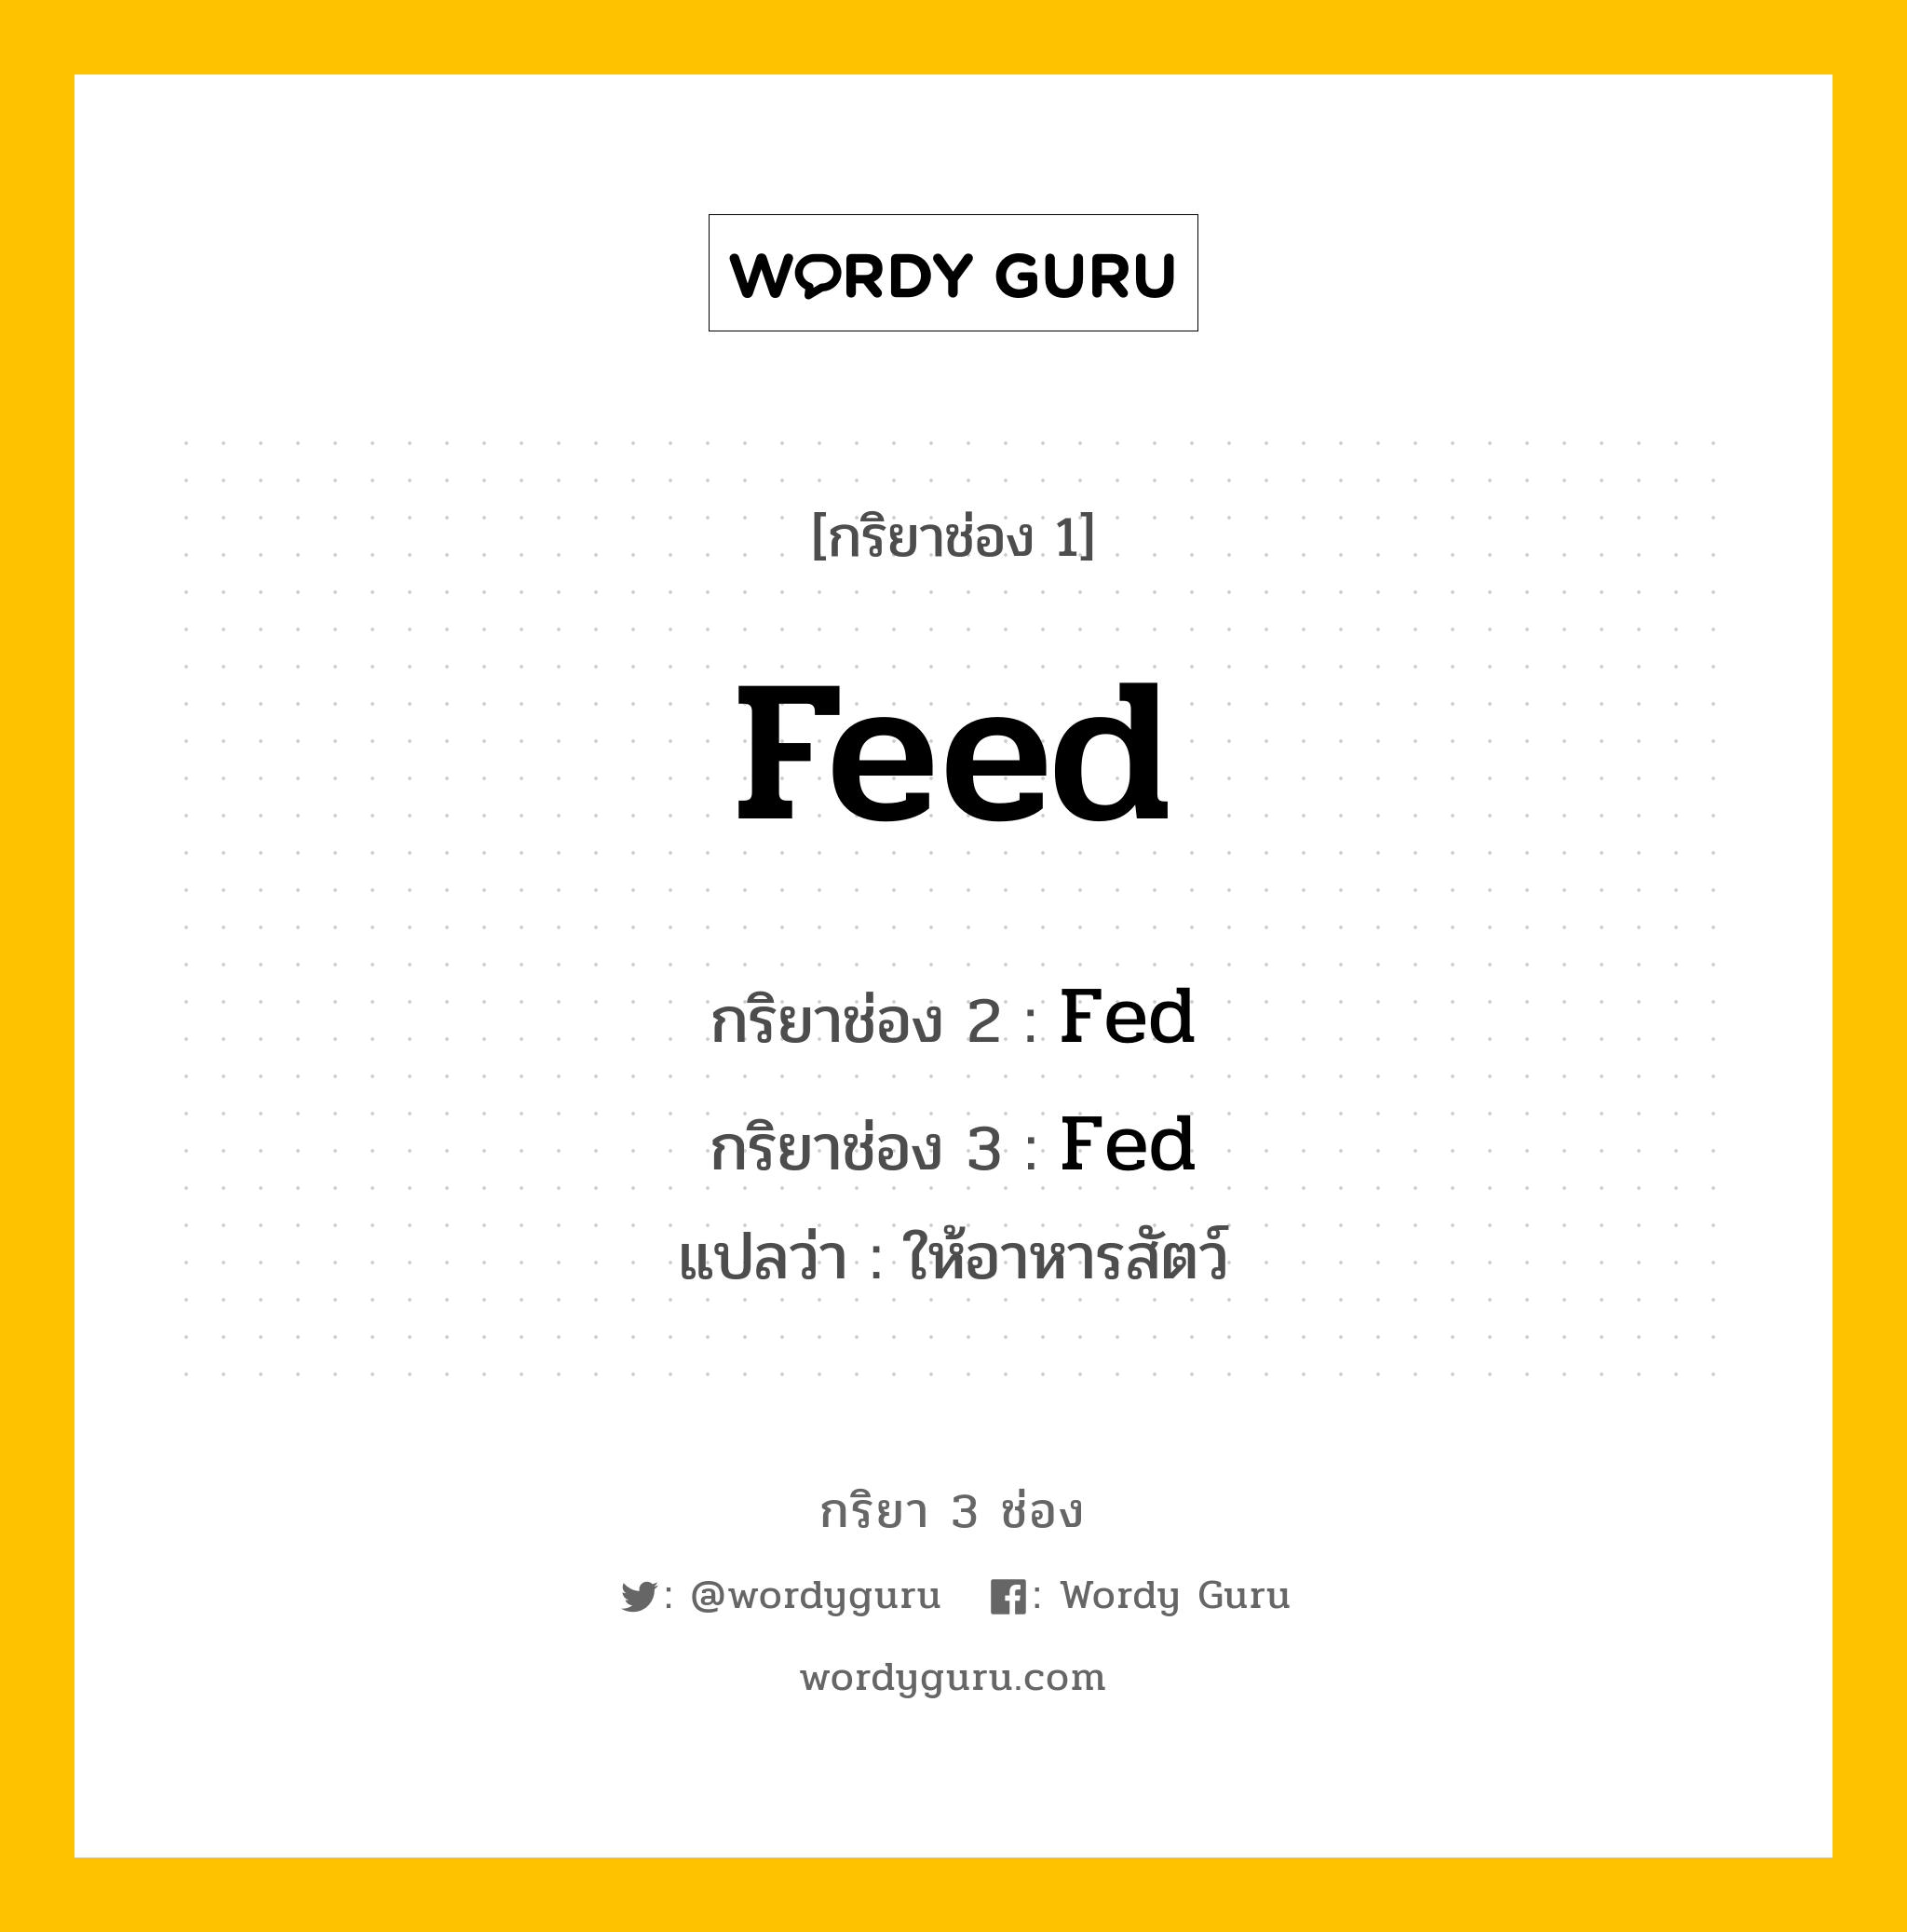 กริยา 3 ช่อง: Feed ช่อง 2 Feed ช่อง 3 คืออะไร, กริยาช่อง 1 Feed กริยาช่อง 2 Fed กริยาช่อง 3 Fed แปลว่า ให้อาหารสัตว์ หมวด Irregular Verb